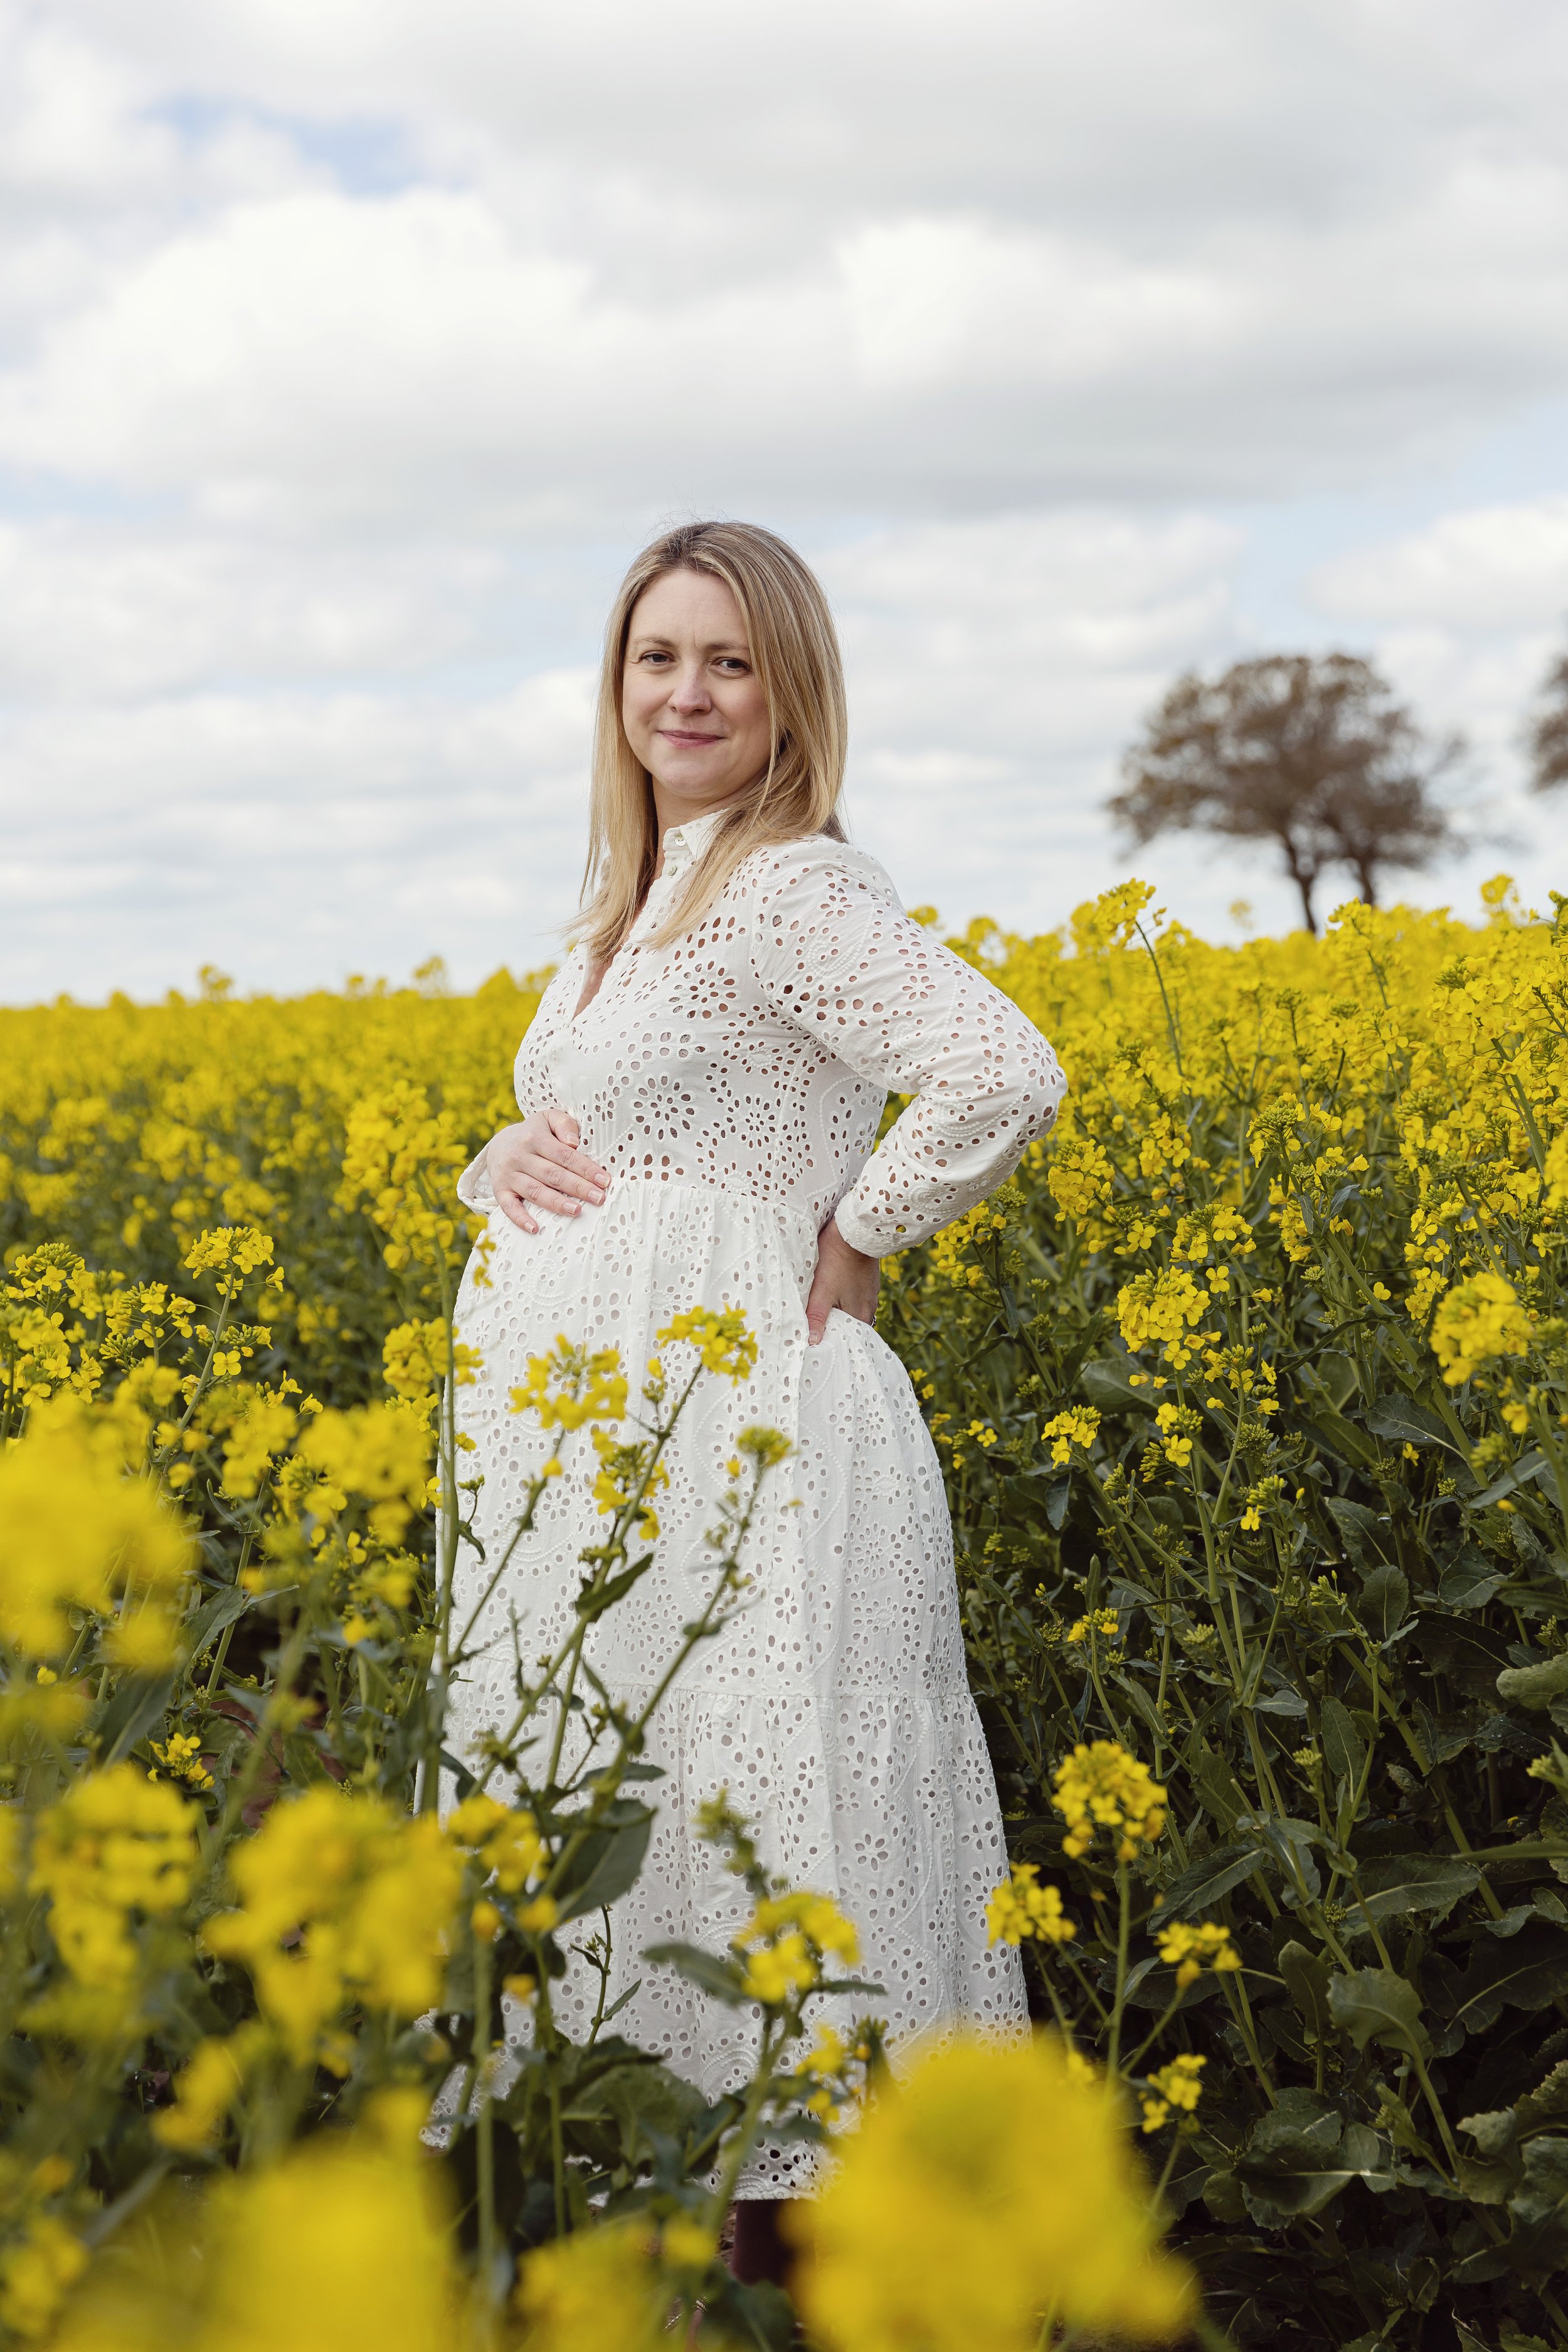 Harpenden-hertfordshire-newborn-maternity-photographer-award-winningEvie-Grace-Photography-IMG_5738.jpg